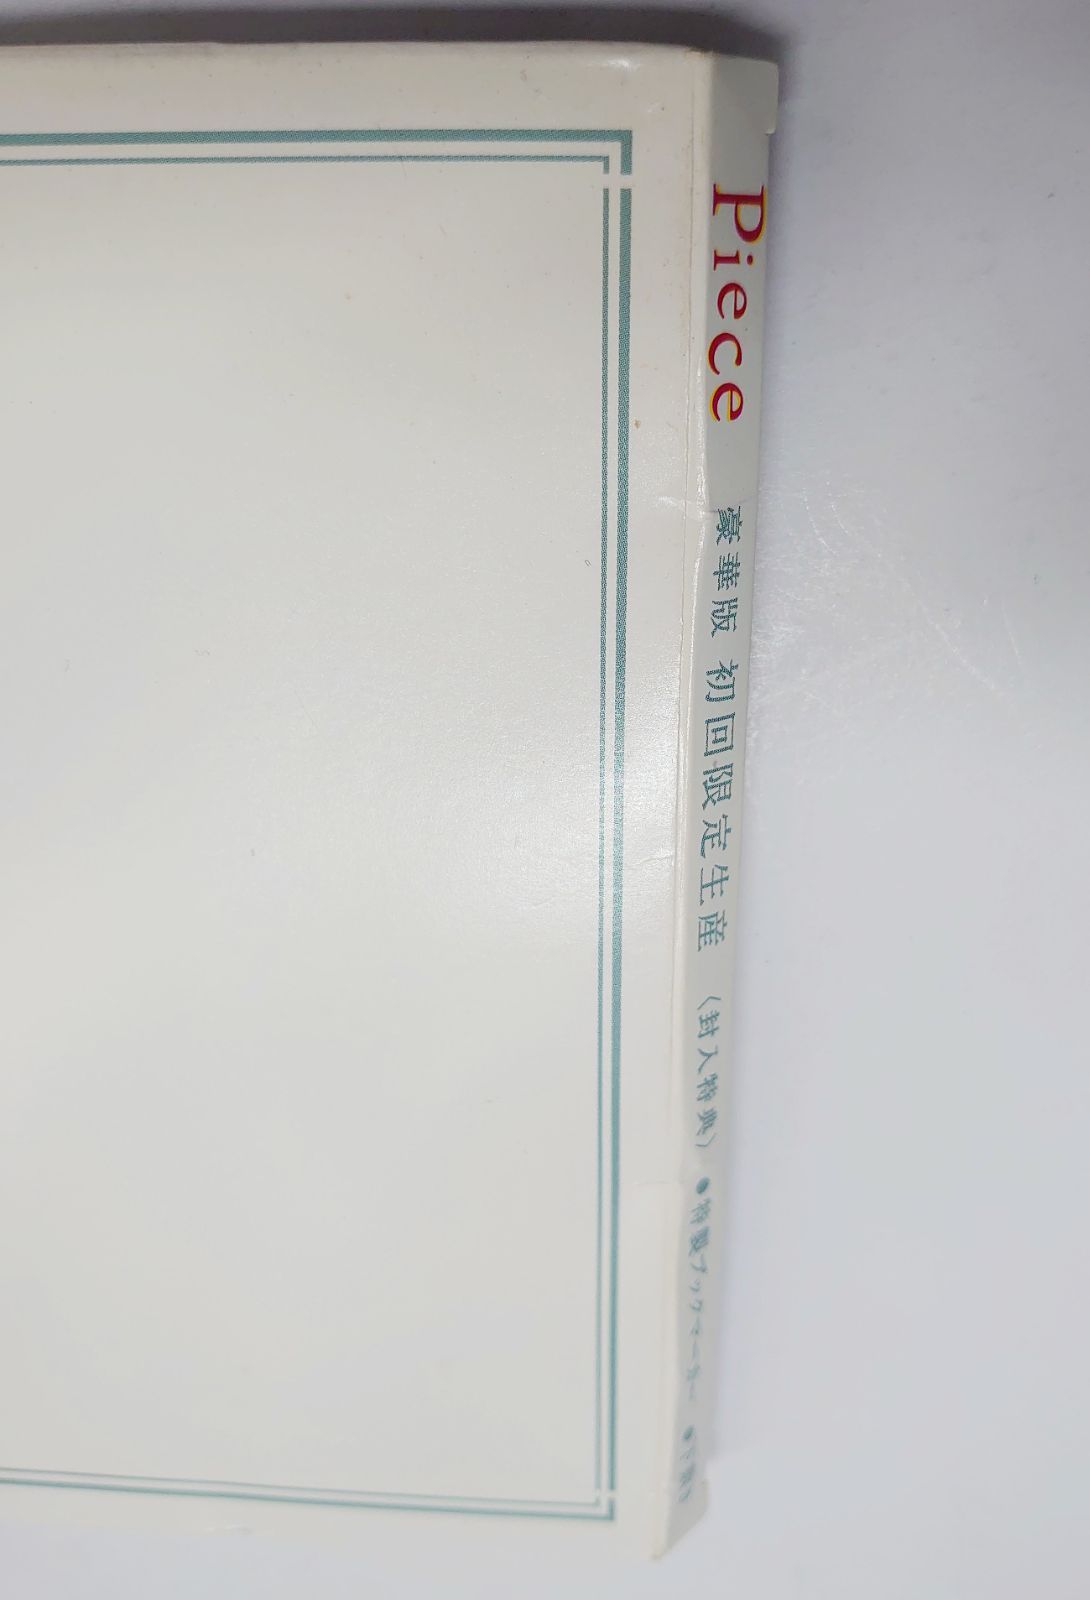 Piece Blu-ray BOX 豪華版 - メルカリ